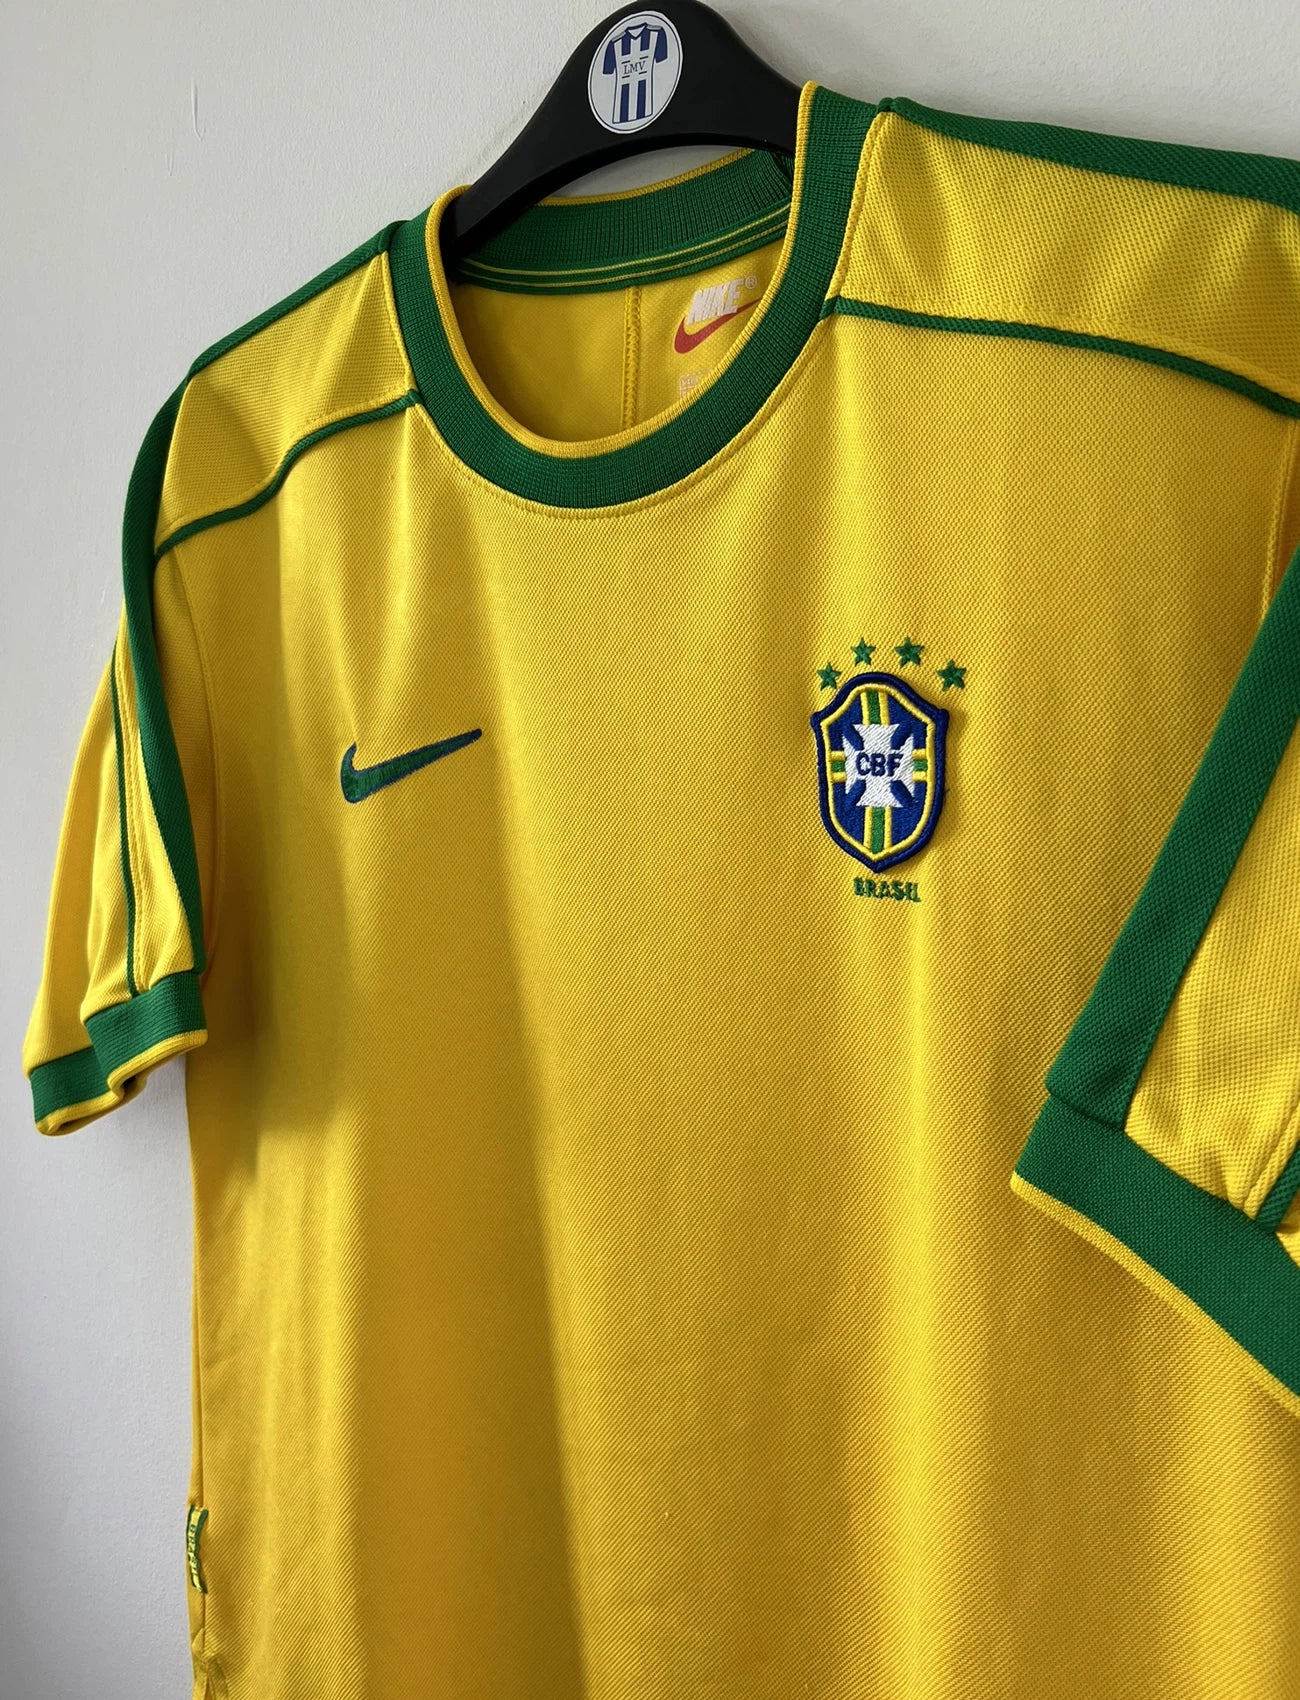 Maillot de foot vintage domicile du bresil 1998. Le maillot est de couleur jaune et vert. On peut retrouver l'équipementier nike. Ils 'agit d'un maillot authentique d'époque.